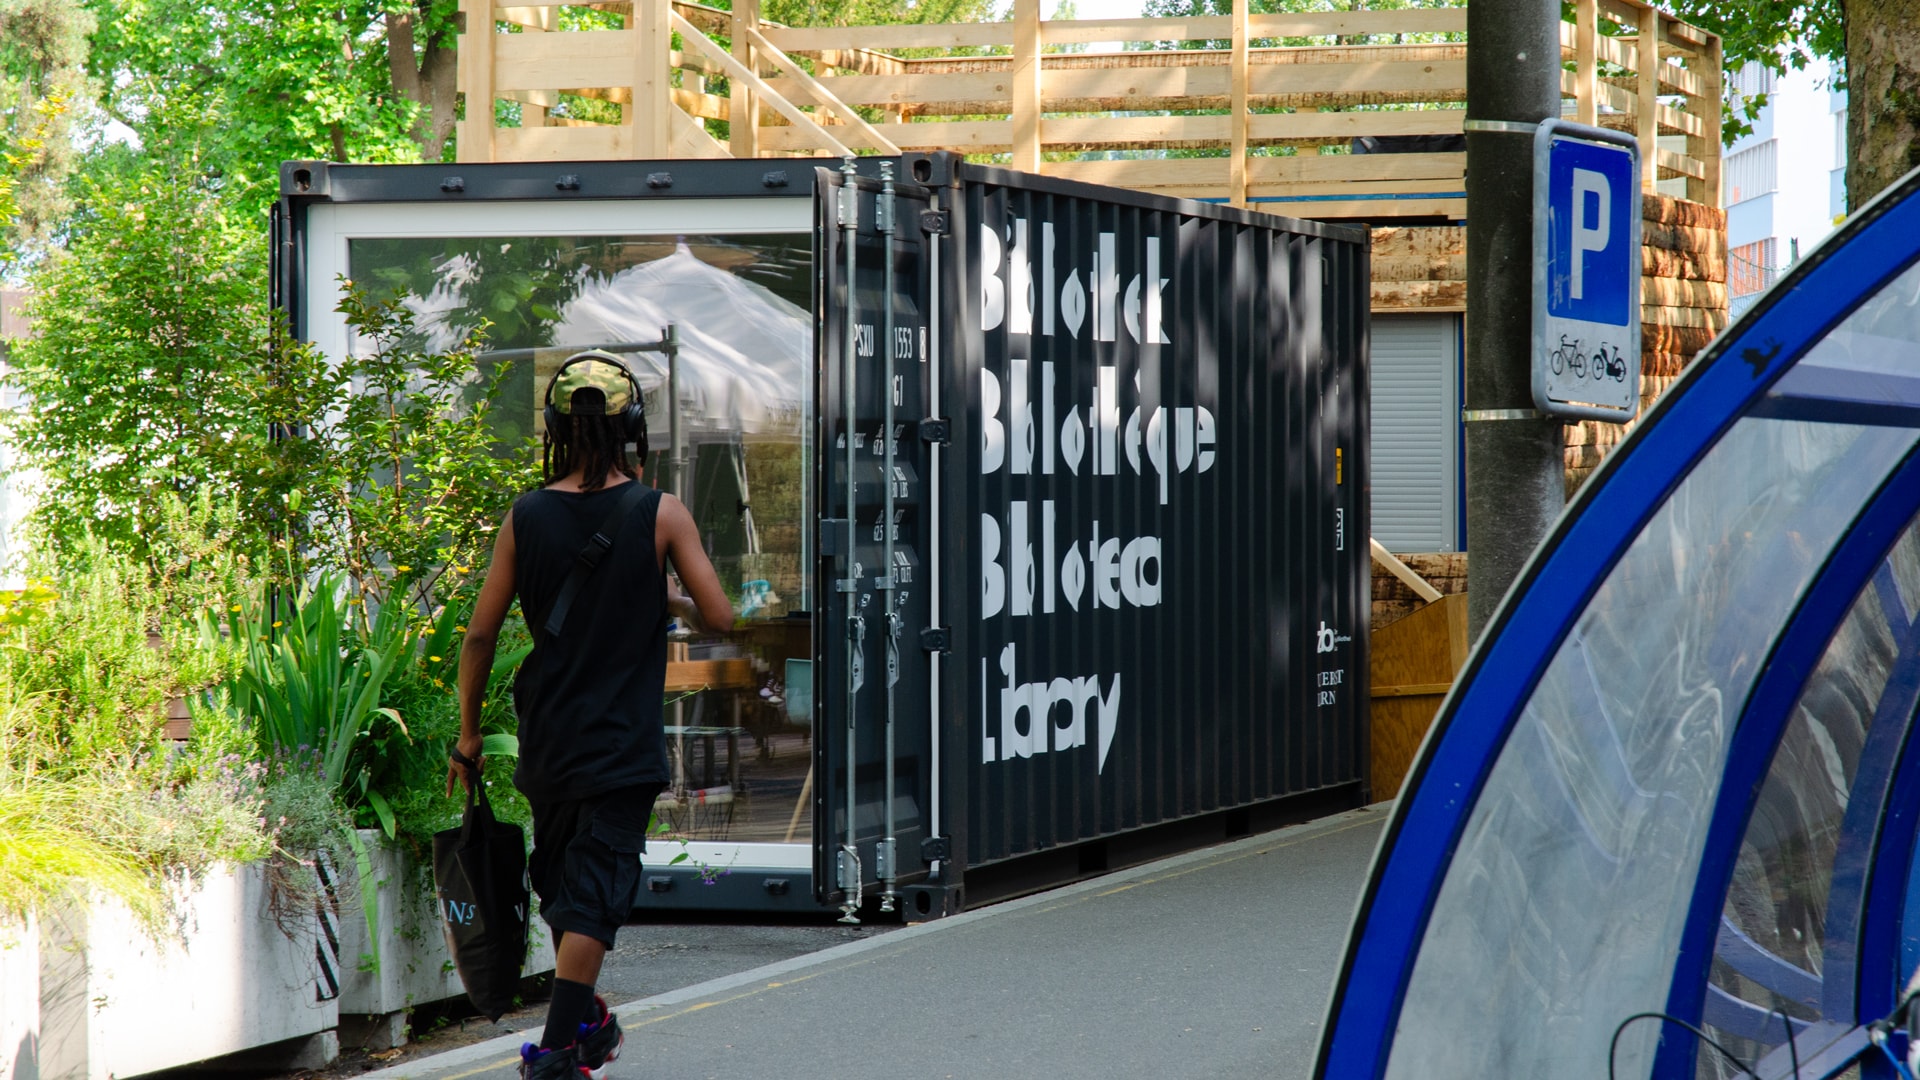 l’équipe visuelle – Beschriftung der Container Bibliothek der ZHB Zentral- und Hochschul-Bibliothek Luzern bei der Zwischennutzung universum auf dem Inseli in Luzern